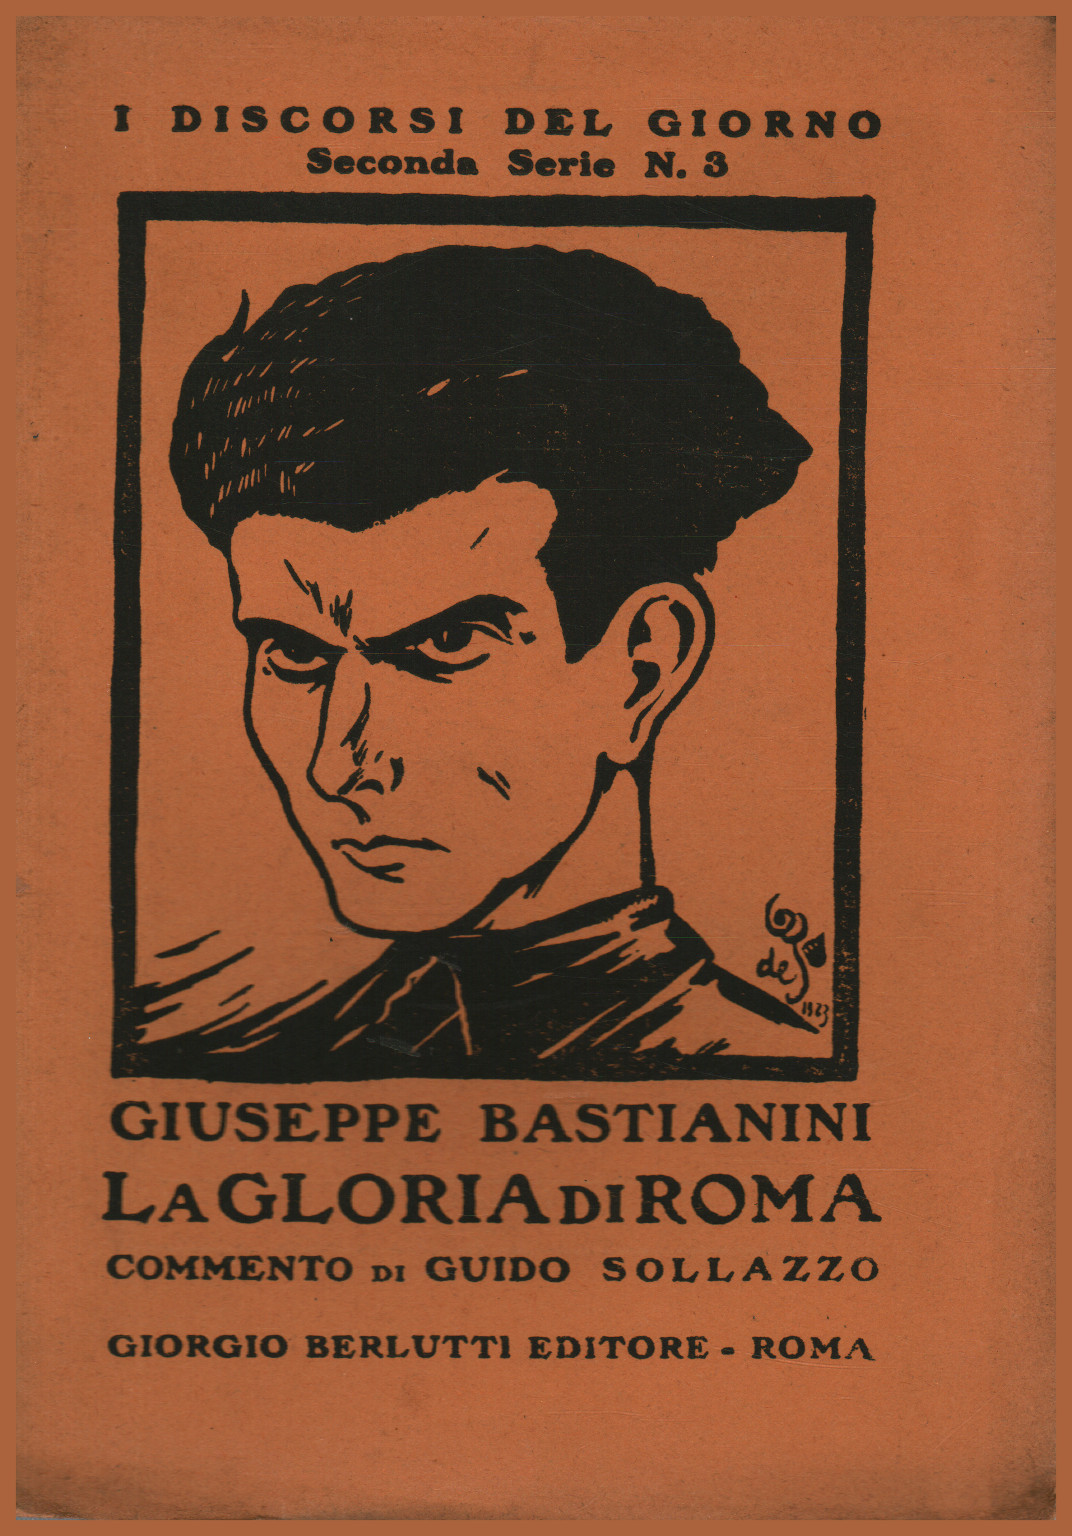 The glory of Rome, Giuseppe Bastianini